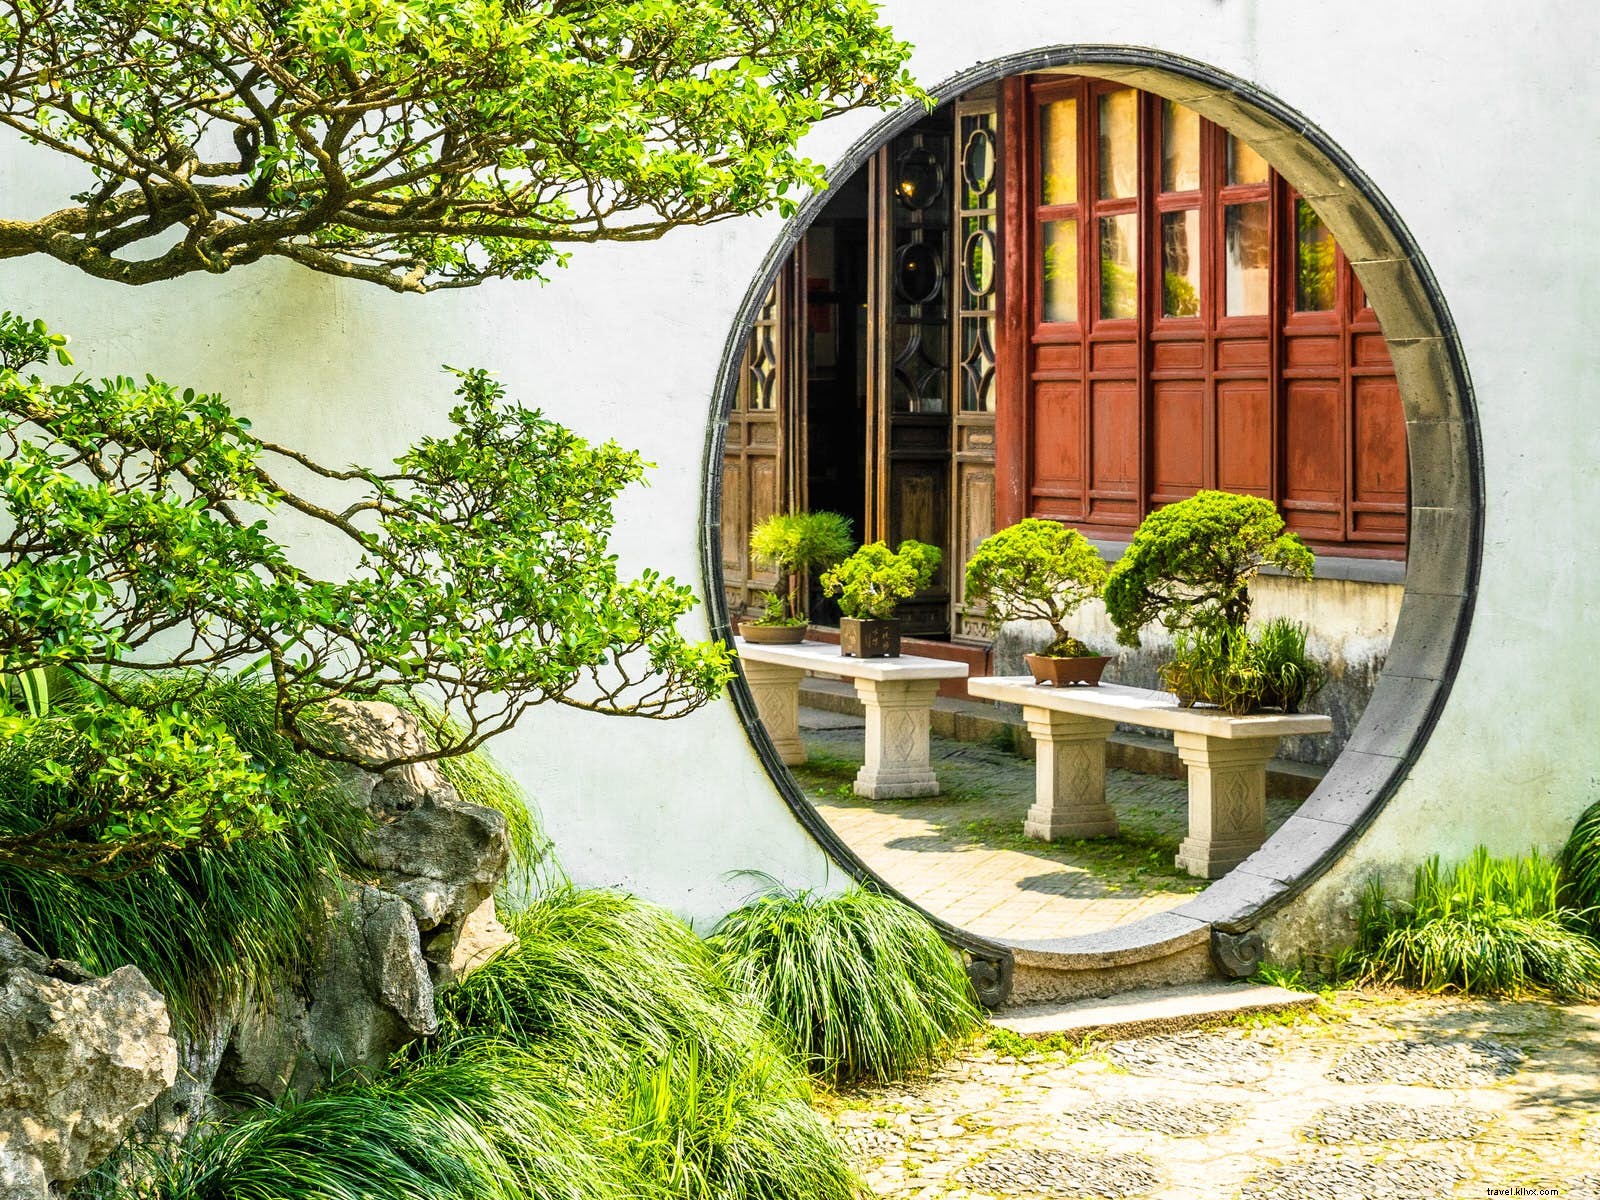 Jardín para quedarse:los elegantes jardines chinos clásicos de Suzhou 